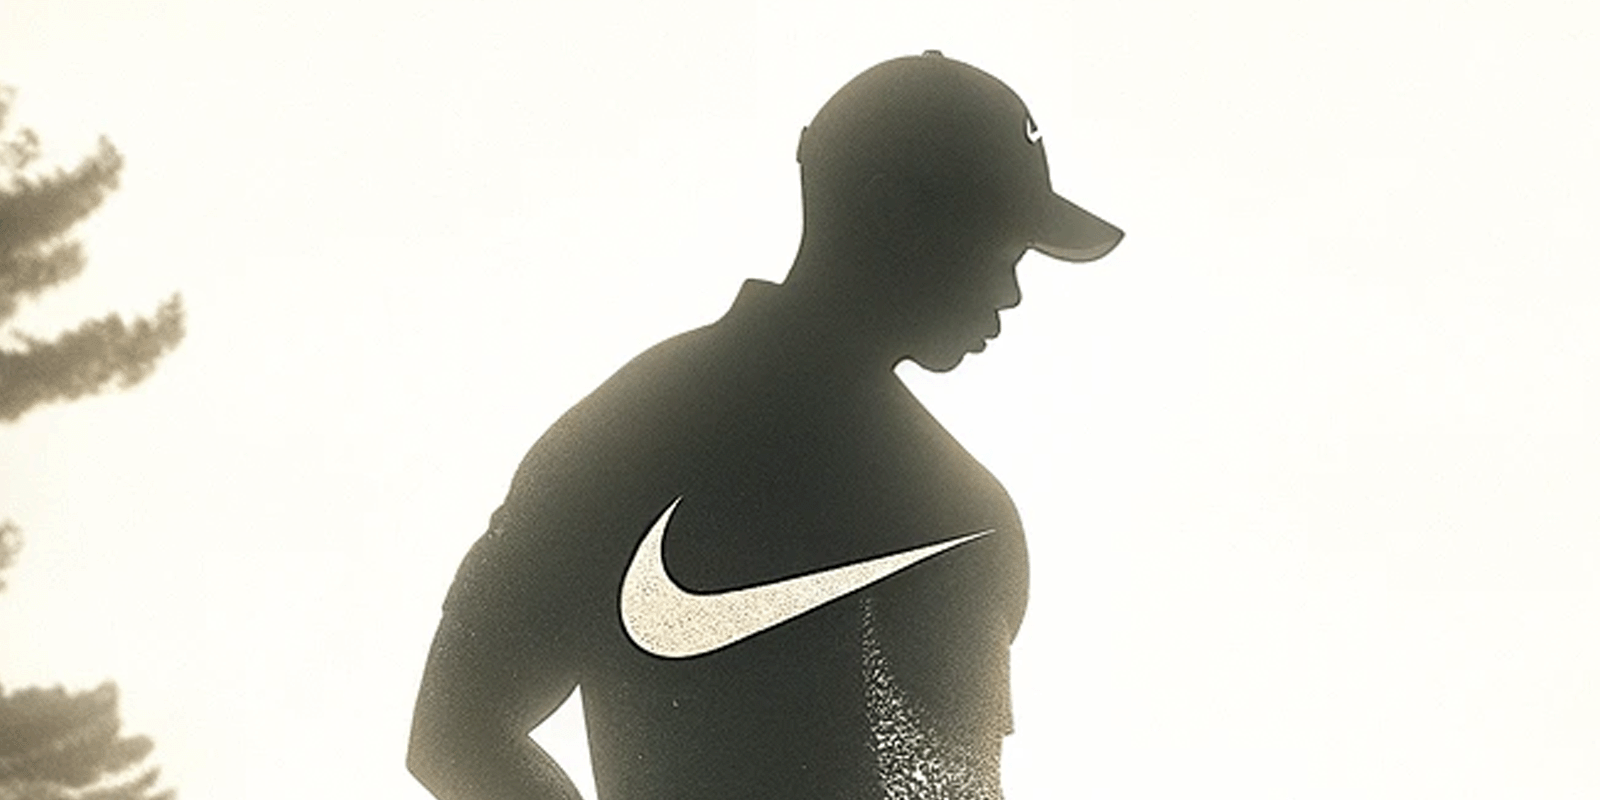 Koniec Ery - Nike kończy współpracę z supergwiazdą Nike MEDIARUN COM TIGER WOODS NIKE KONIEC V1